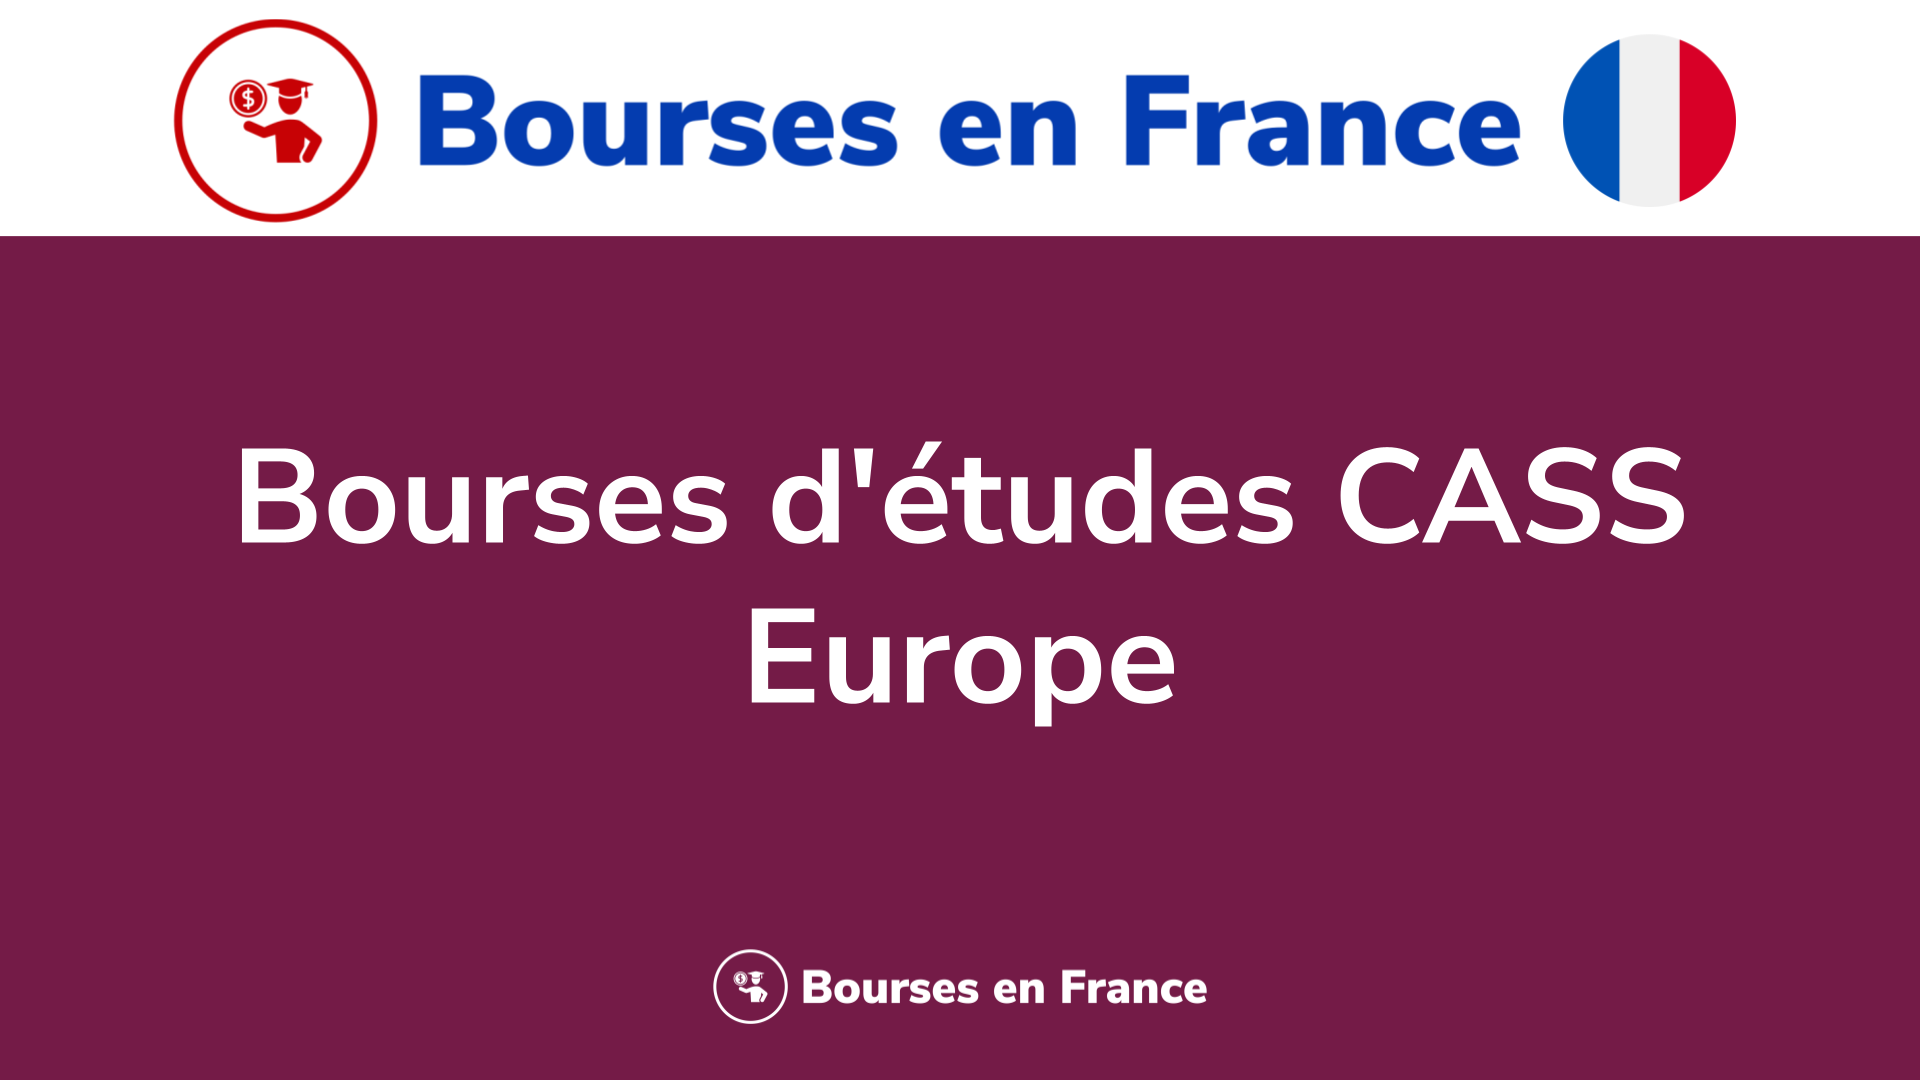 Bourses d'études CASS Europe